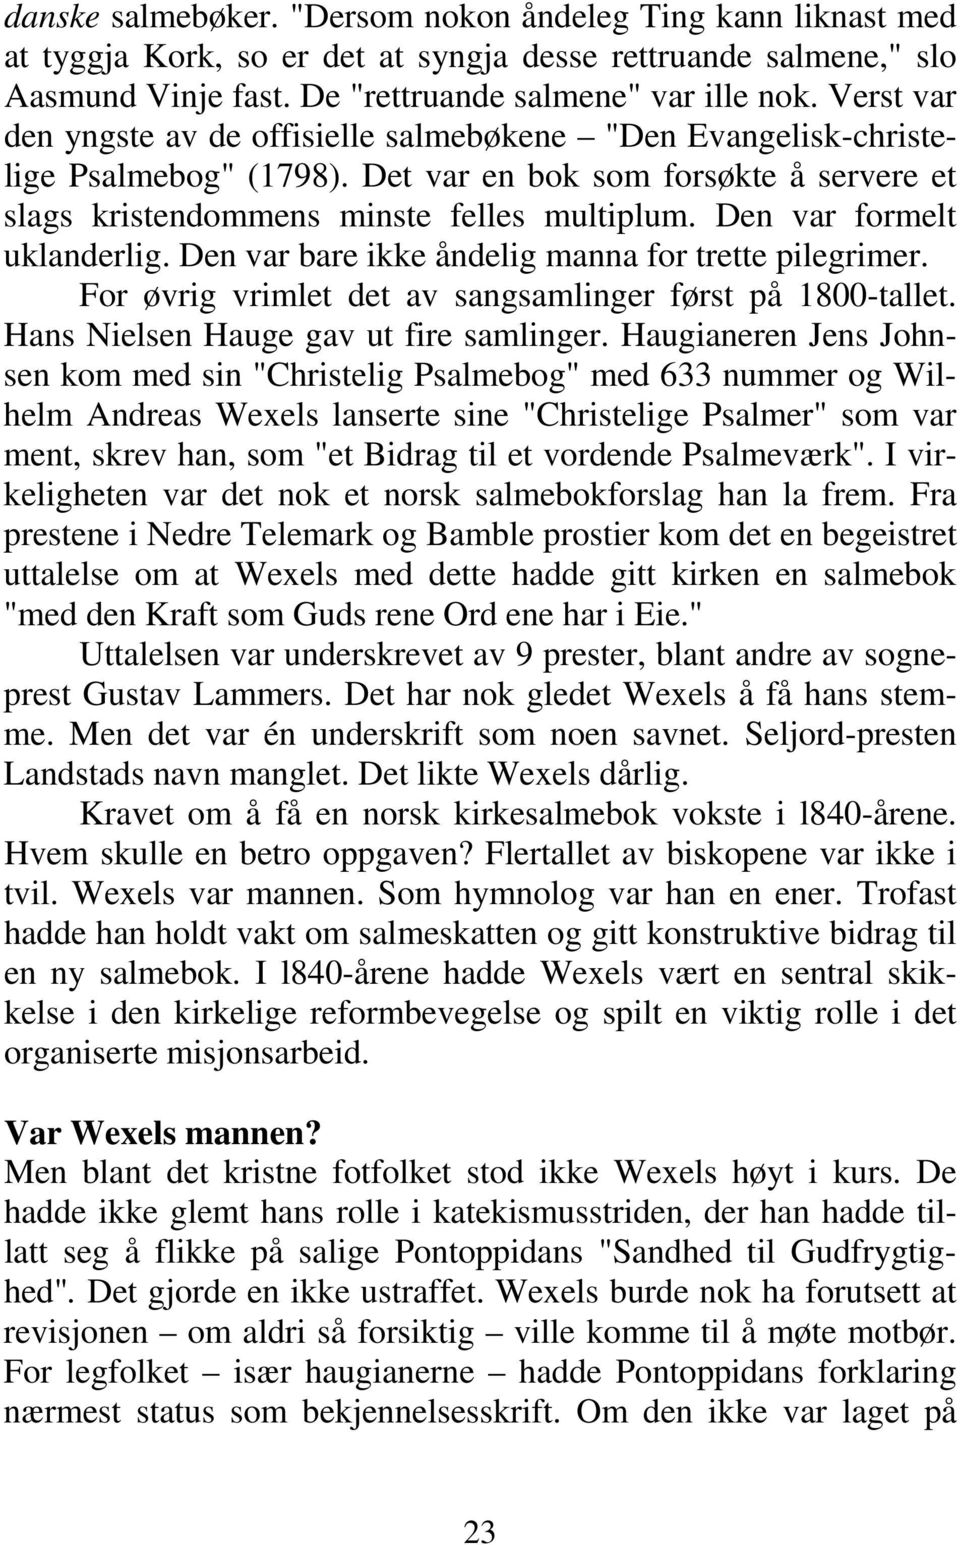 Den var formelt uklanderlig. Den var bare ikke åndelig manna for trette pilegrimer. For øvrig vrimlet det av sangsamlinger først på 1800-tallet. Hans Nielsen Hauge gav ut fire samlinger.